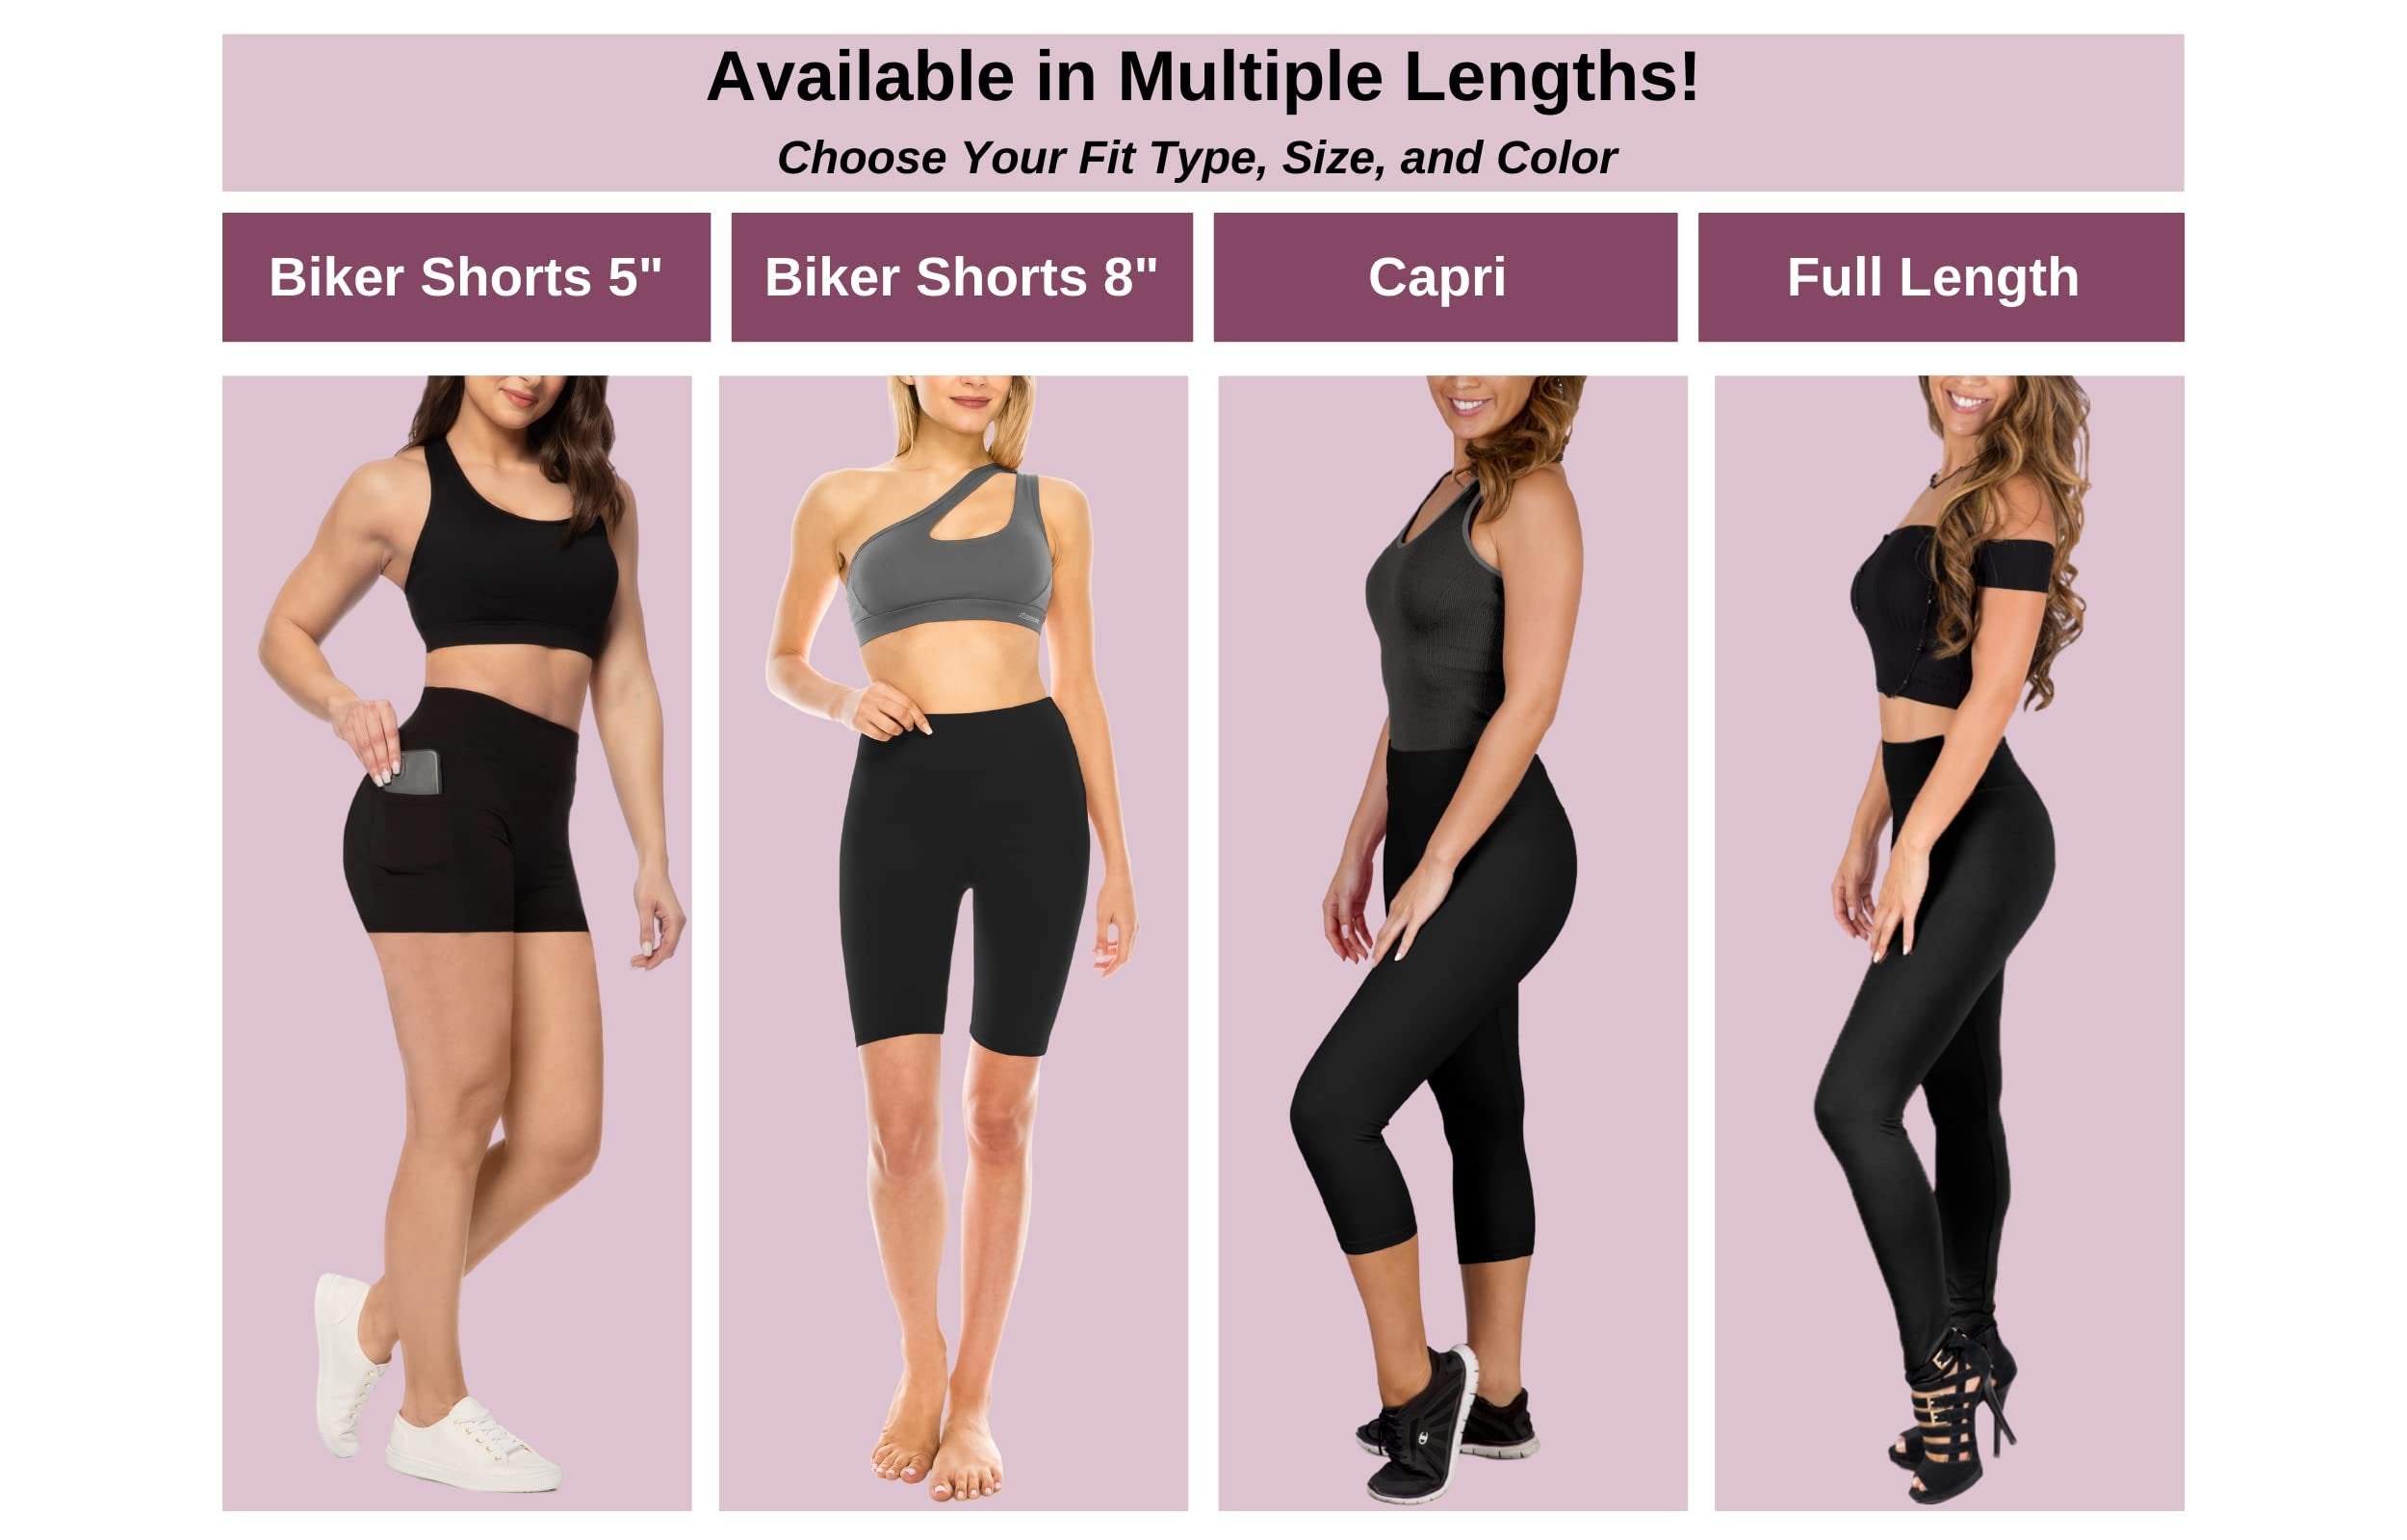 SATINA High Waisted Capri Leggings for Women - Capri Leggings for Women - High Waist for Tummy Control - Olive Capri Leggings for |3 Inch Waistband (Plus Size, Olive)